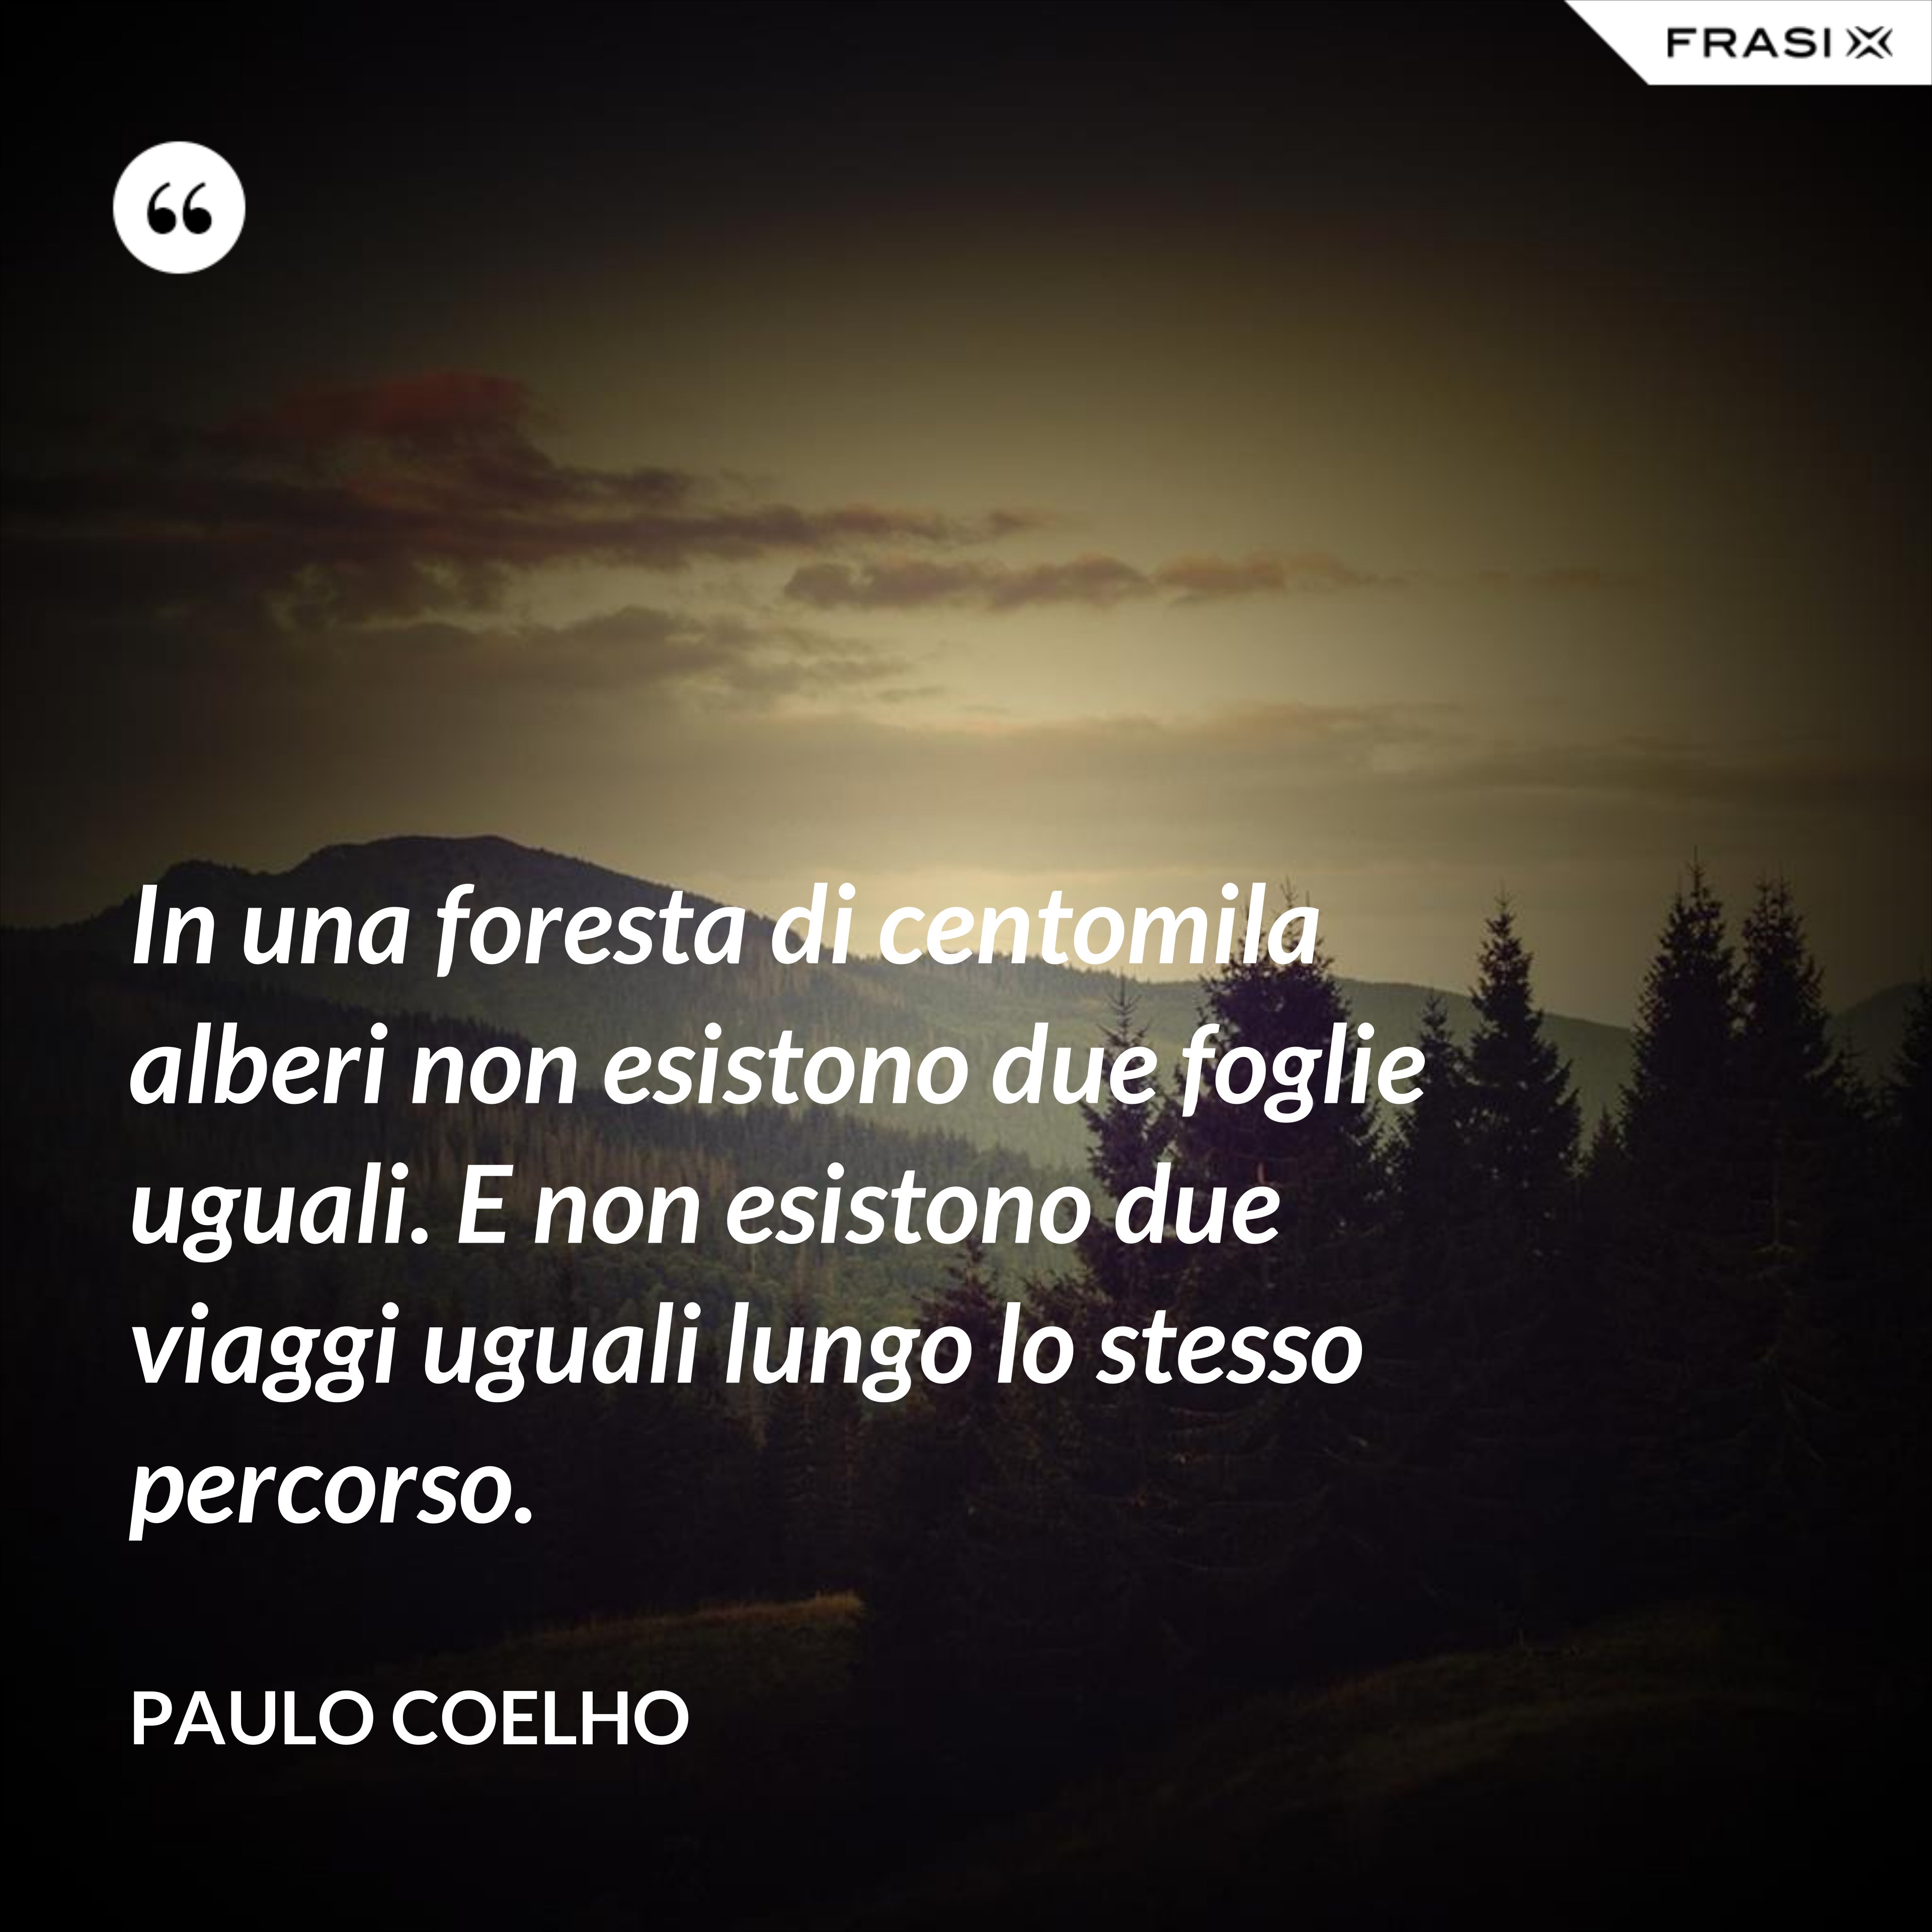 In una foresta di centomila alberi non esistono due foglie uguali. E non esistono due viaggi uguali lungo lo stesso percorso. - Paulo Coelho